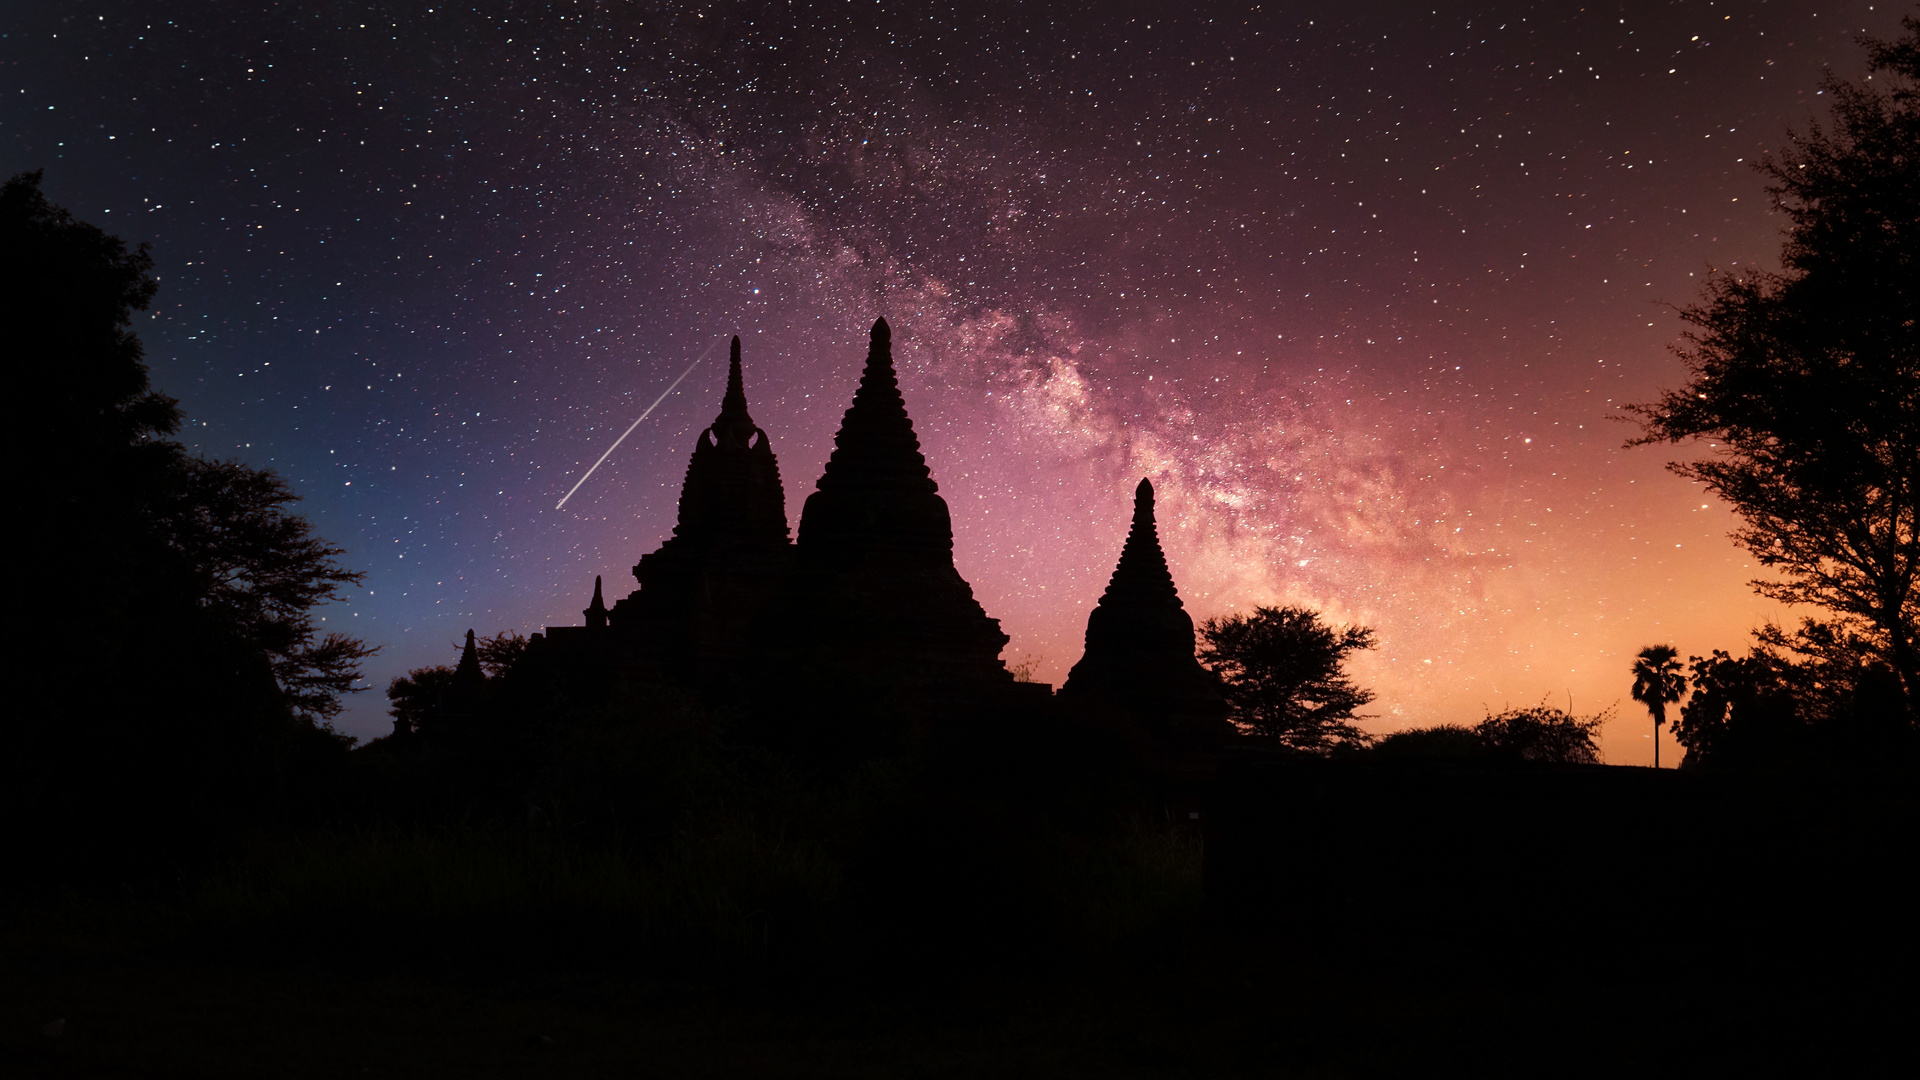 One Night In Bagan